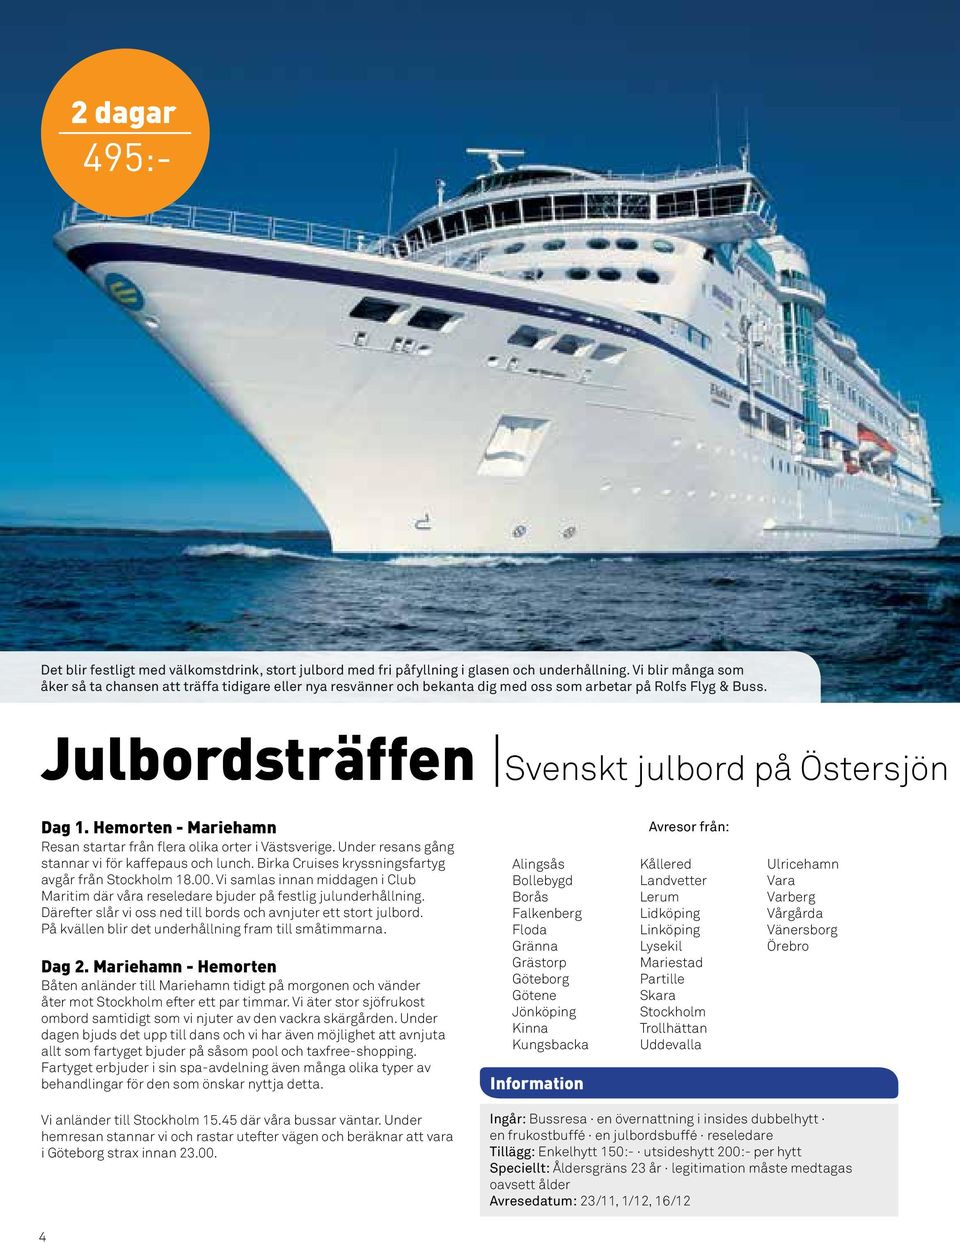 Hemorten - Mariehamn Resan startar från flera olika orter i Västsverige. Under resans gång stannar vi för kaffepaus och lunch. Birka Cruises kryssningsfartyg avgår från Stockholm 18.00.